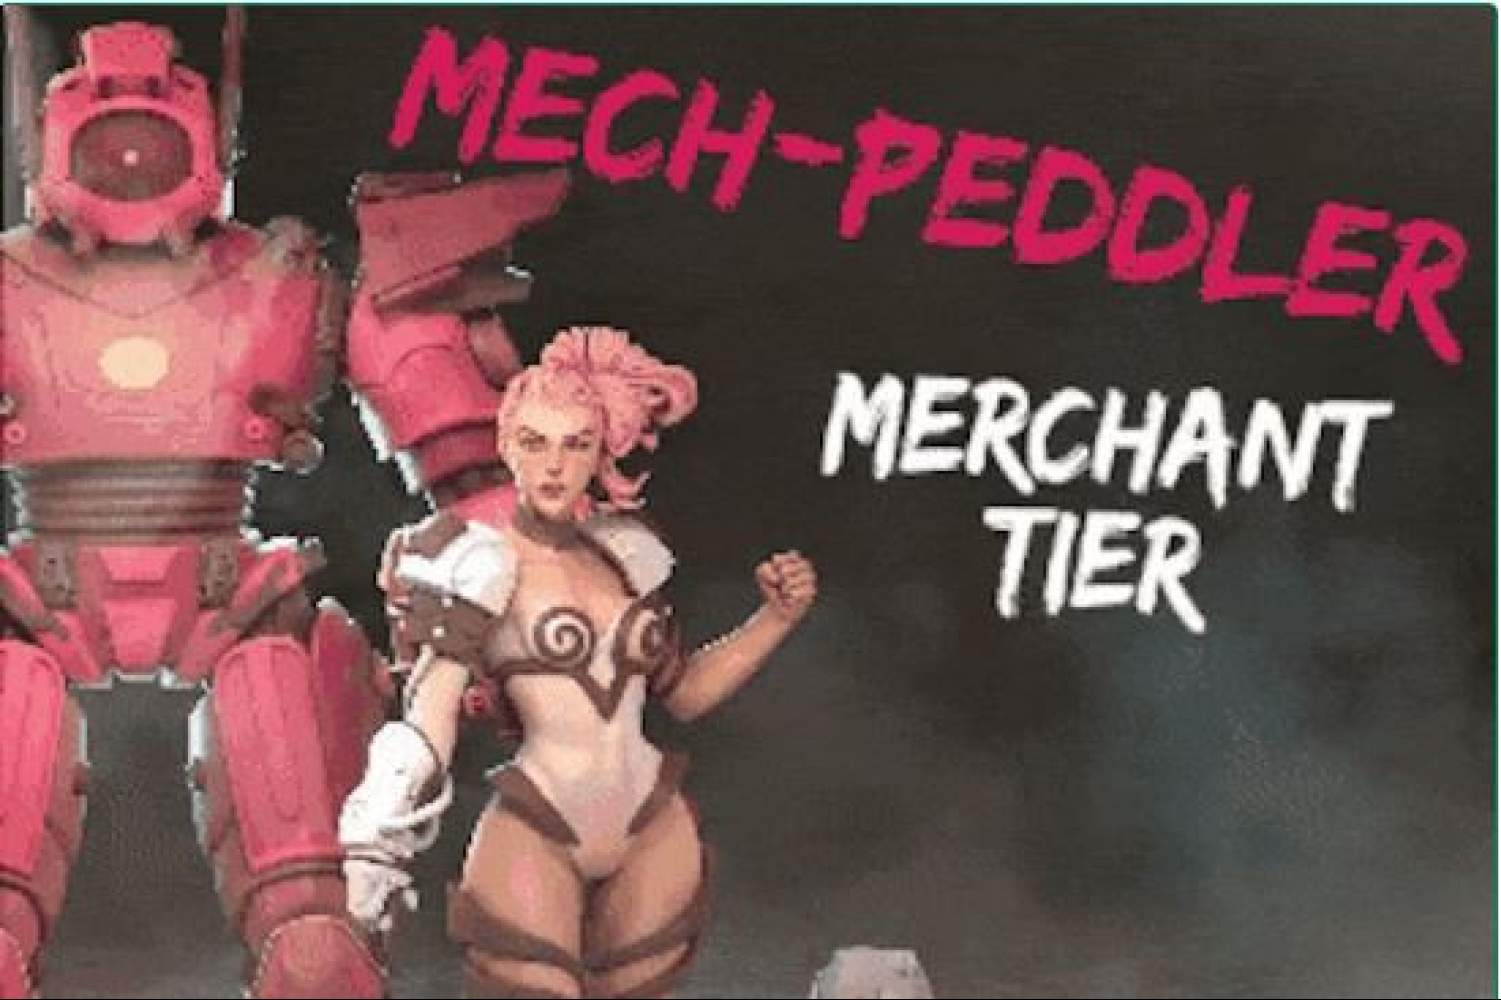 Mech-Peddler: Merchant Tier's Cover